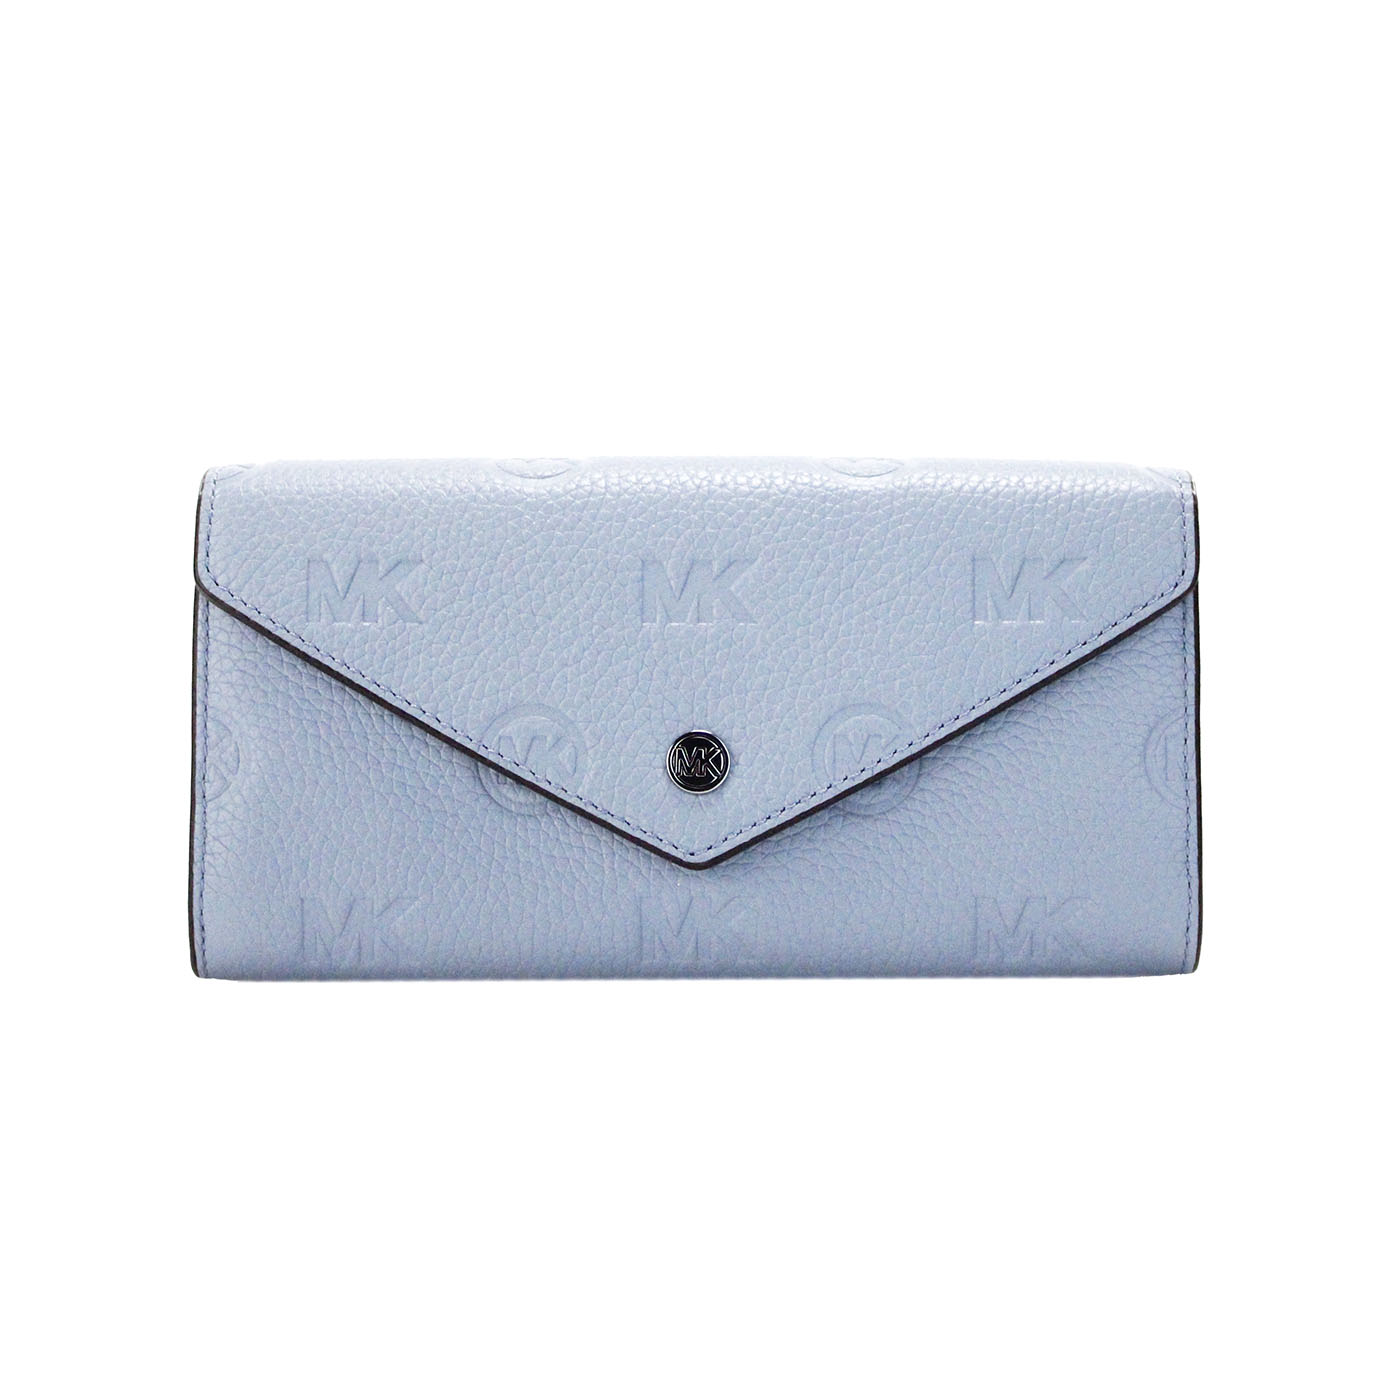 Jet Set Large Pale Blue Embossed Envelope Continental Clutch Wallet